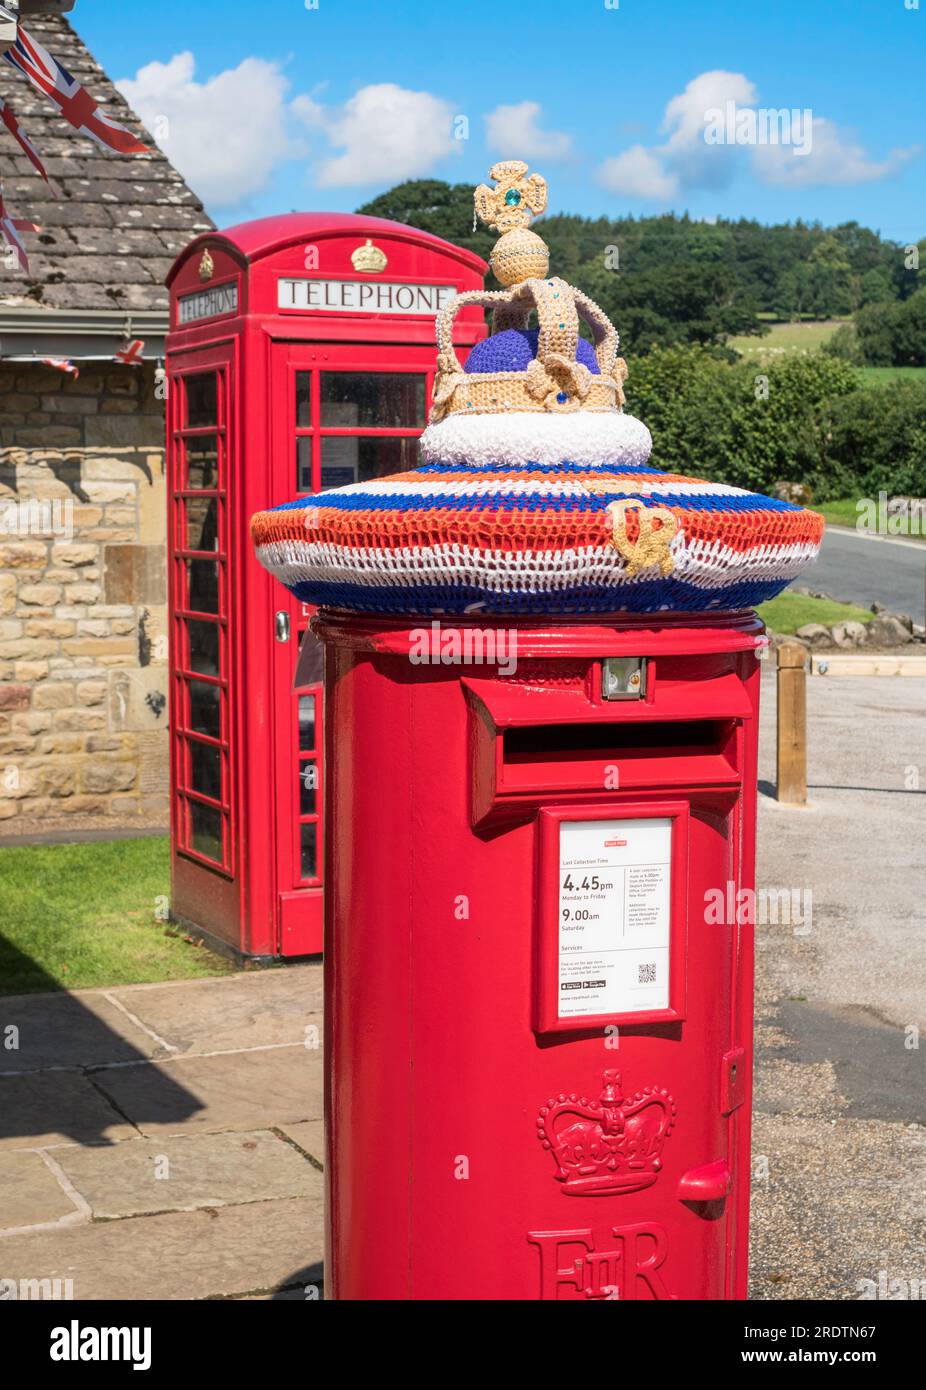 Corona commemorativa a maglia per celebrare l'incoronazione del re sopra una casella postale rossa, Inghilterra, Regno Unito Foto Stock